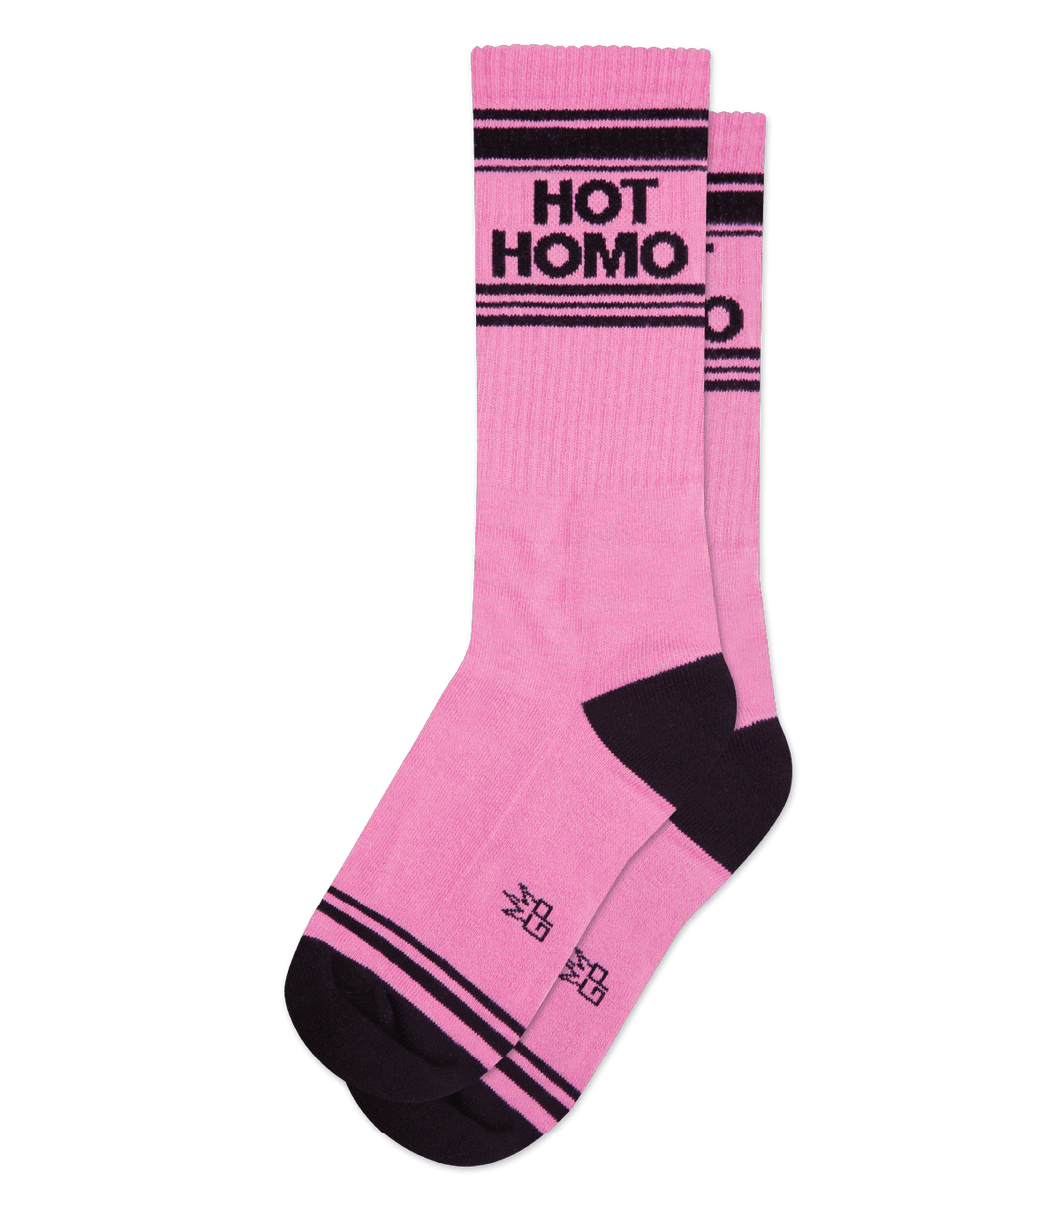 Hot Homo Socks - Indie Indie Bang! Bang!